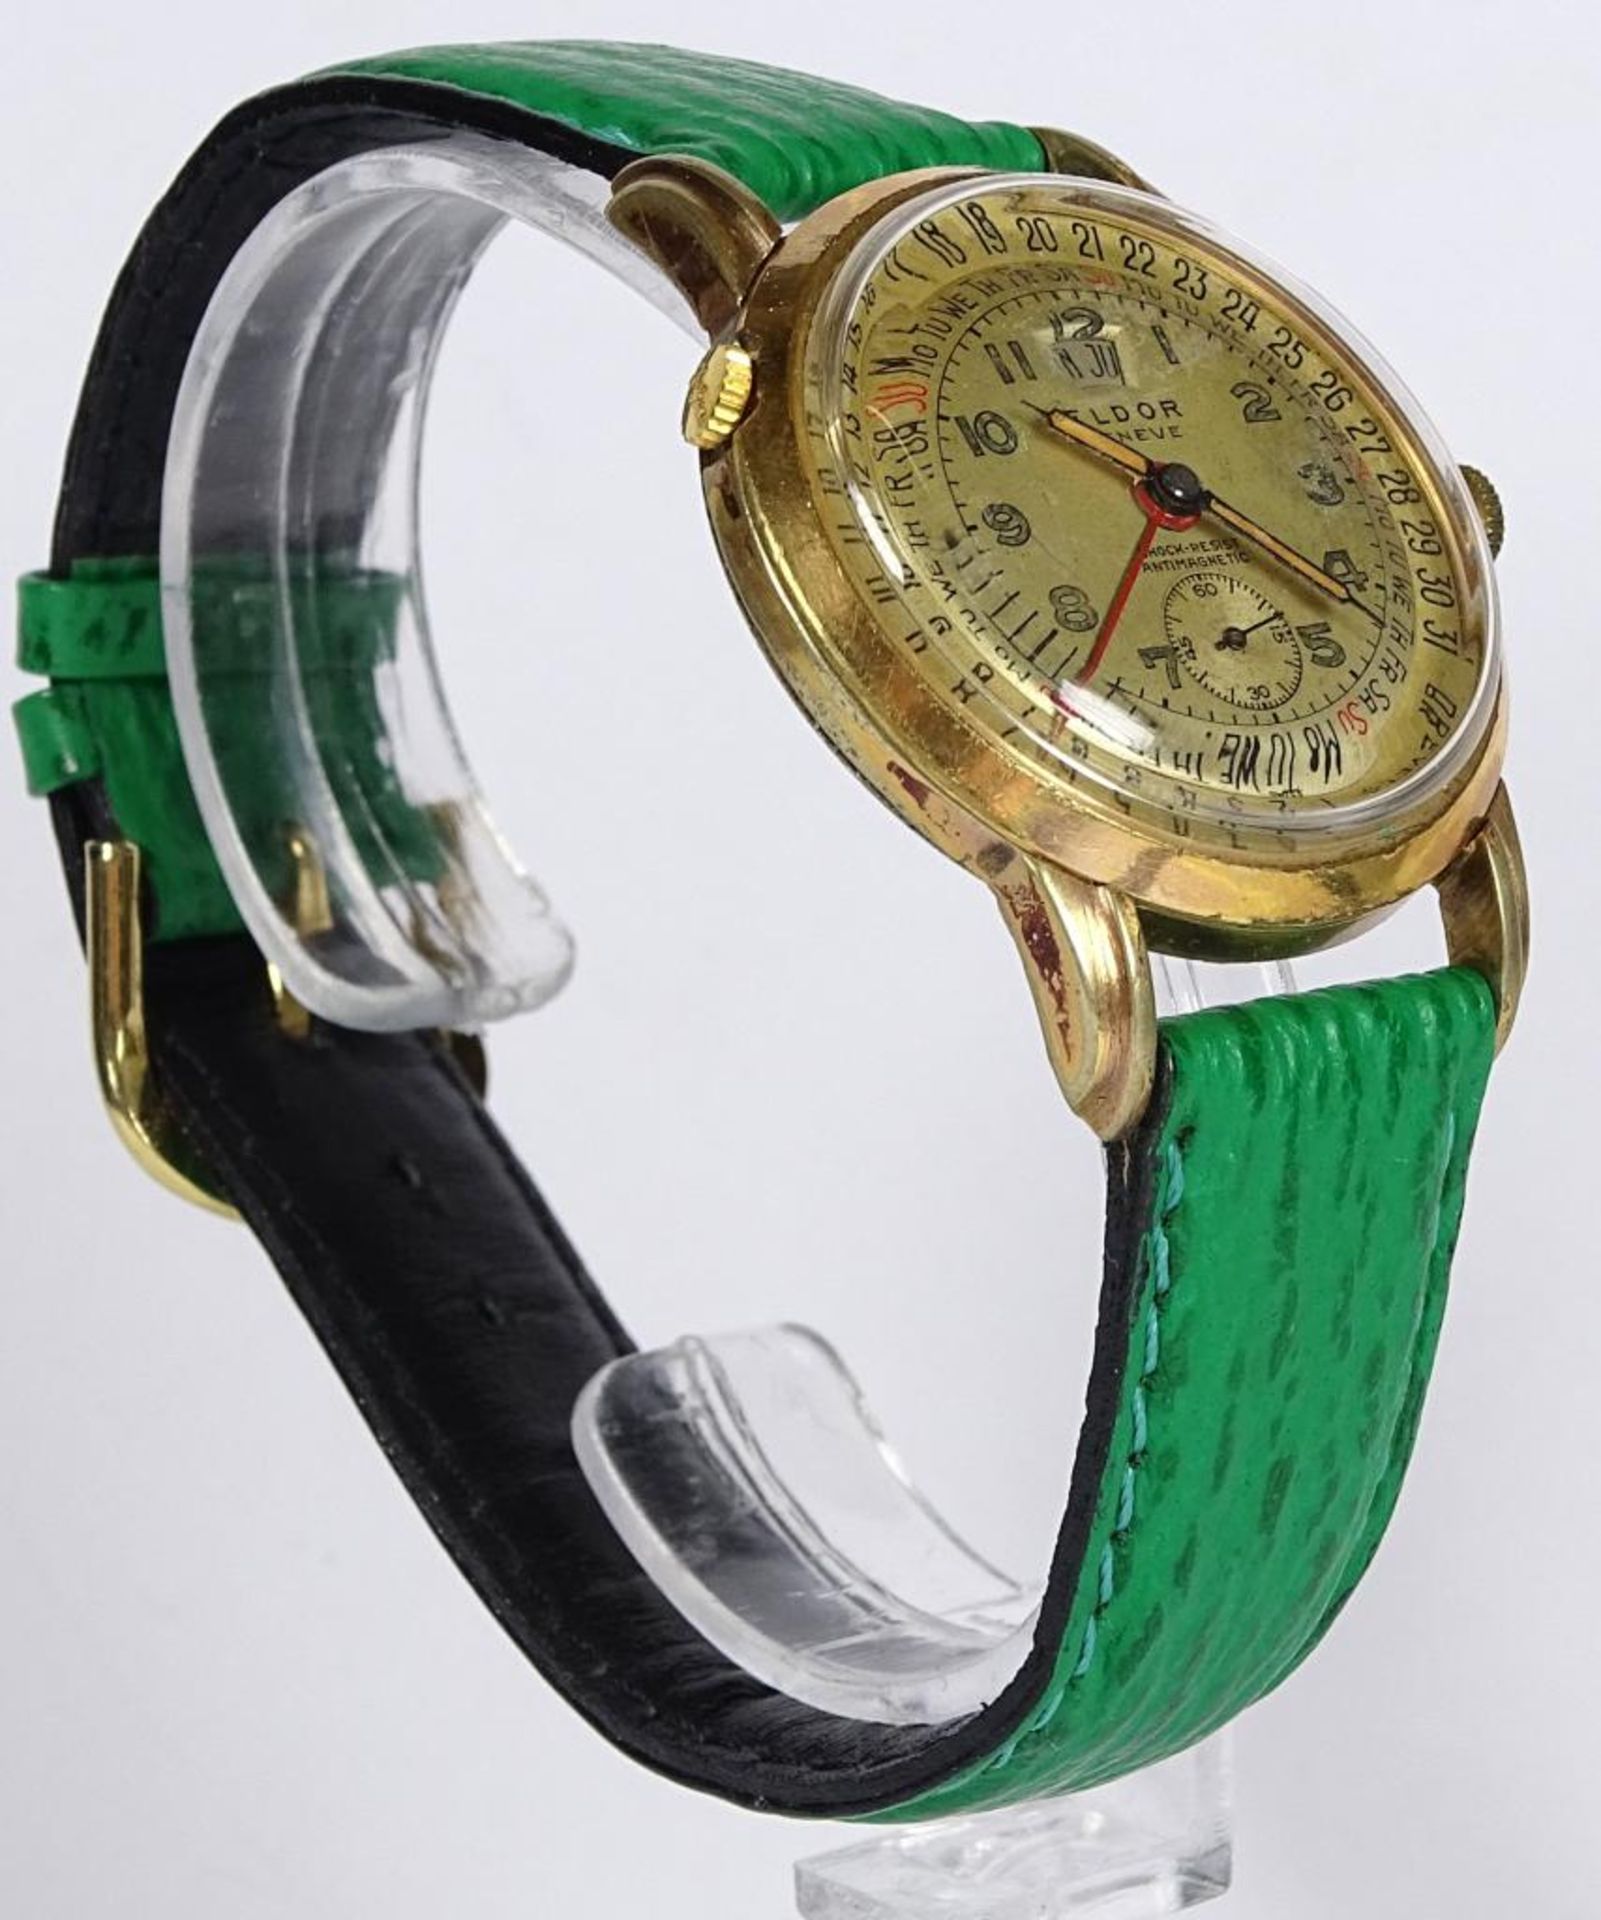 Armbanduhr "Eldor",geneve,vergoldet,Handaufzug,Werk läuft,Alters-u. Gebrauchsspure - Bild 4 aus 5